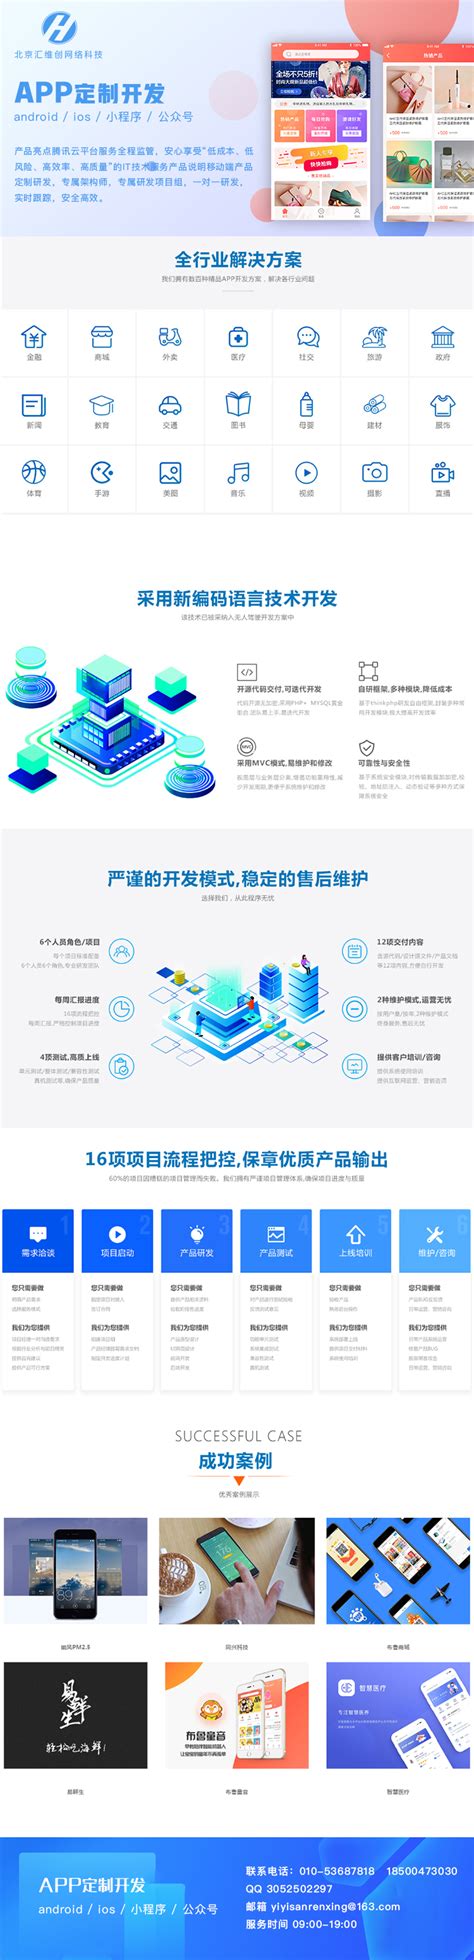 北京APP开发|北京APP设计|APP开发公司-天润智力北京APP开发公司